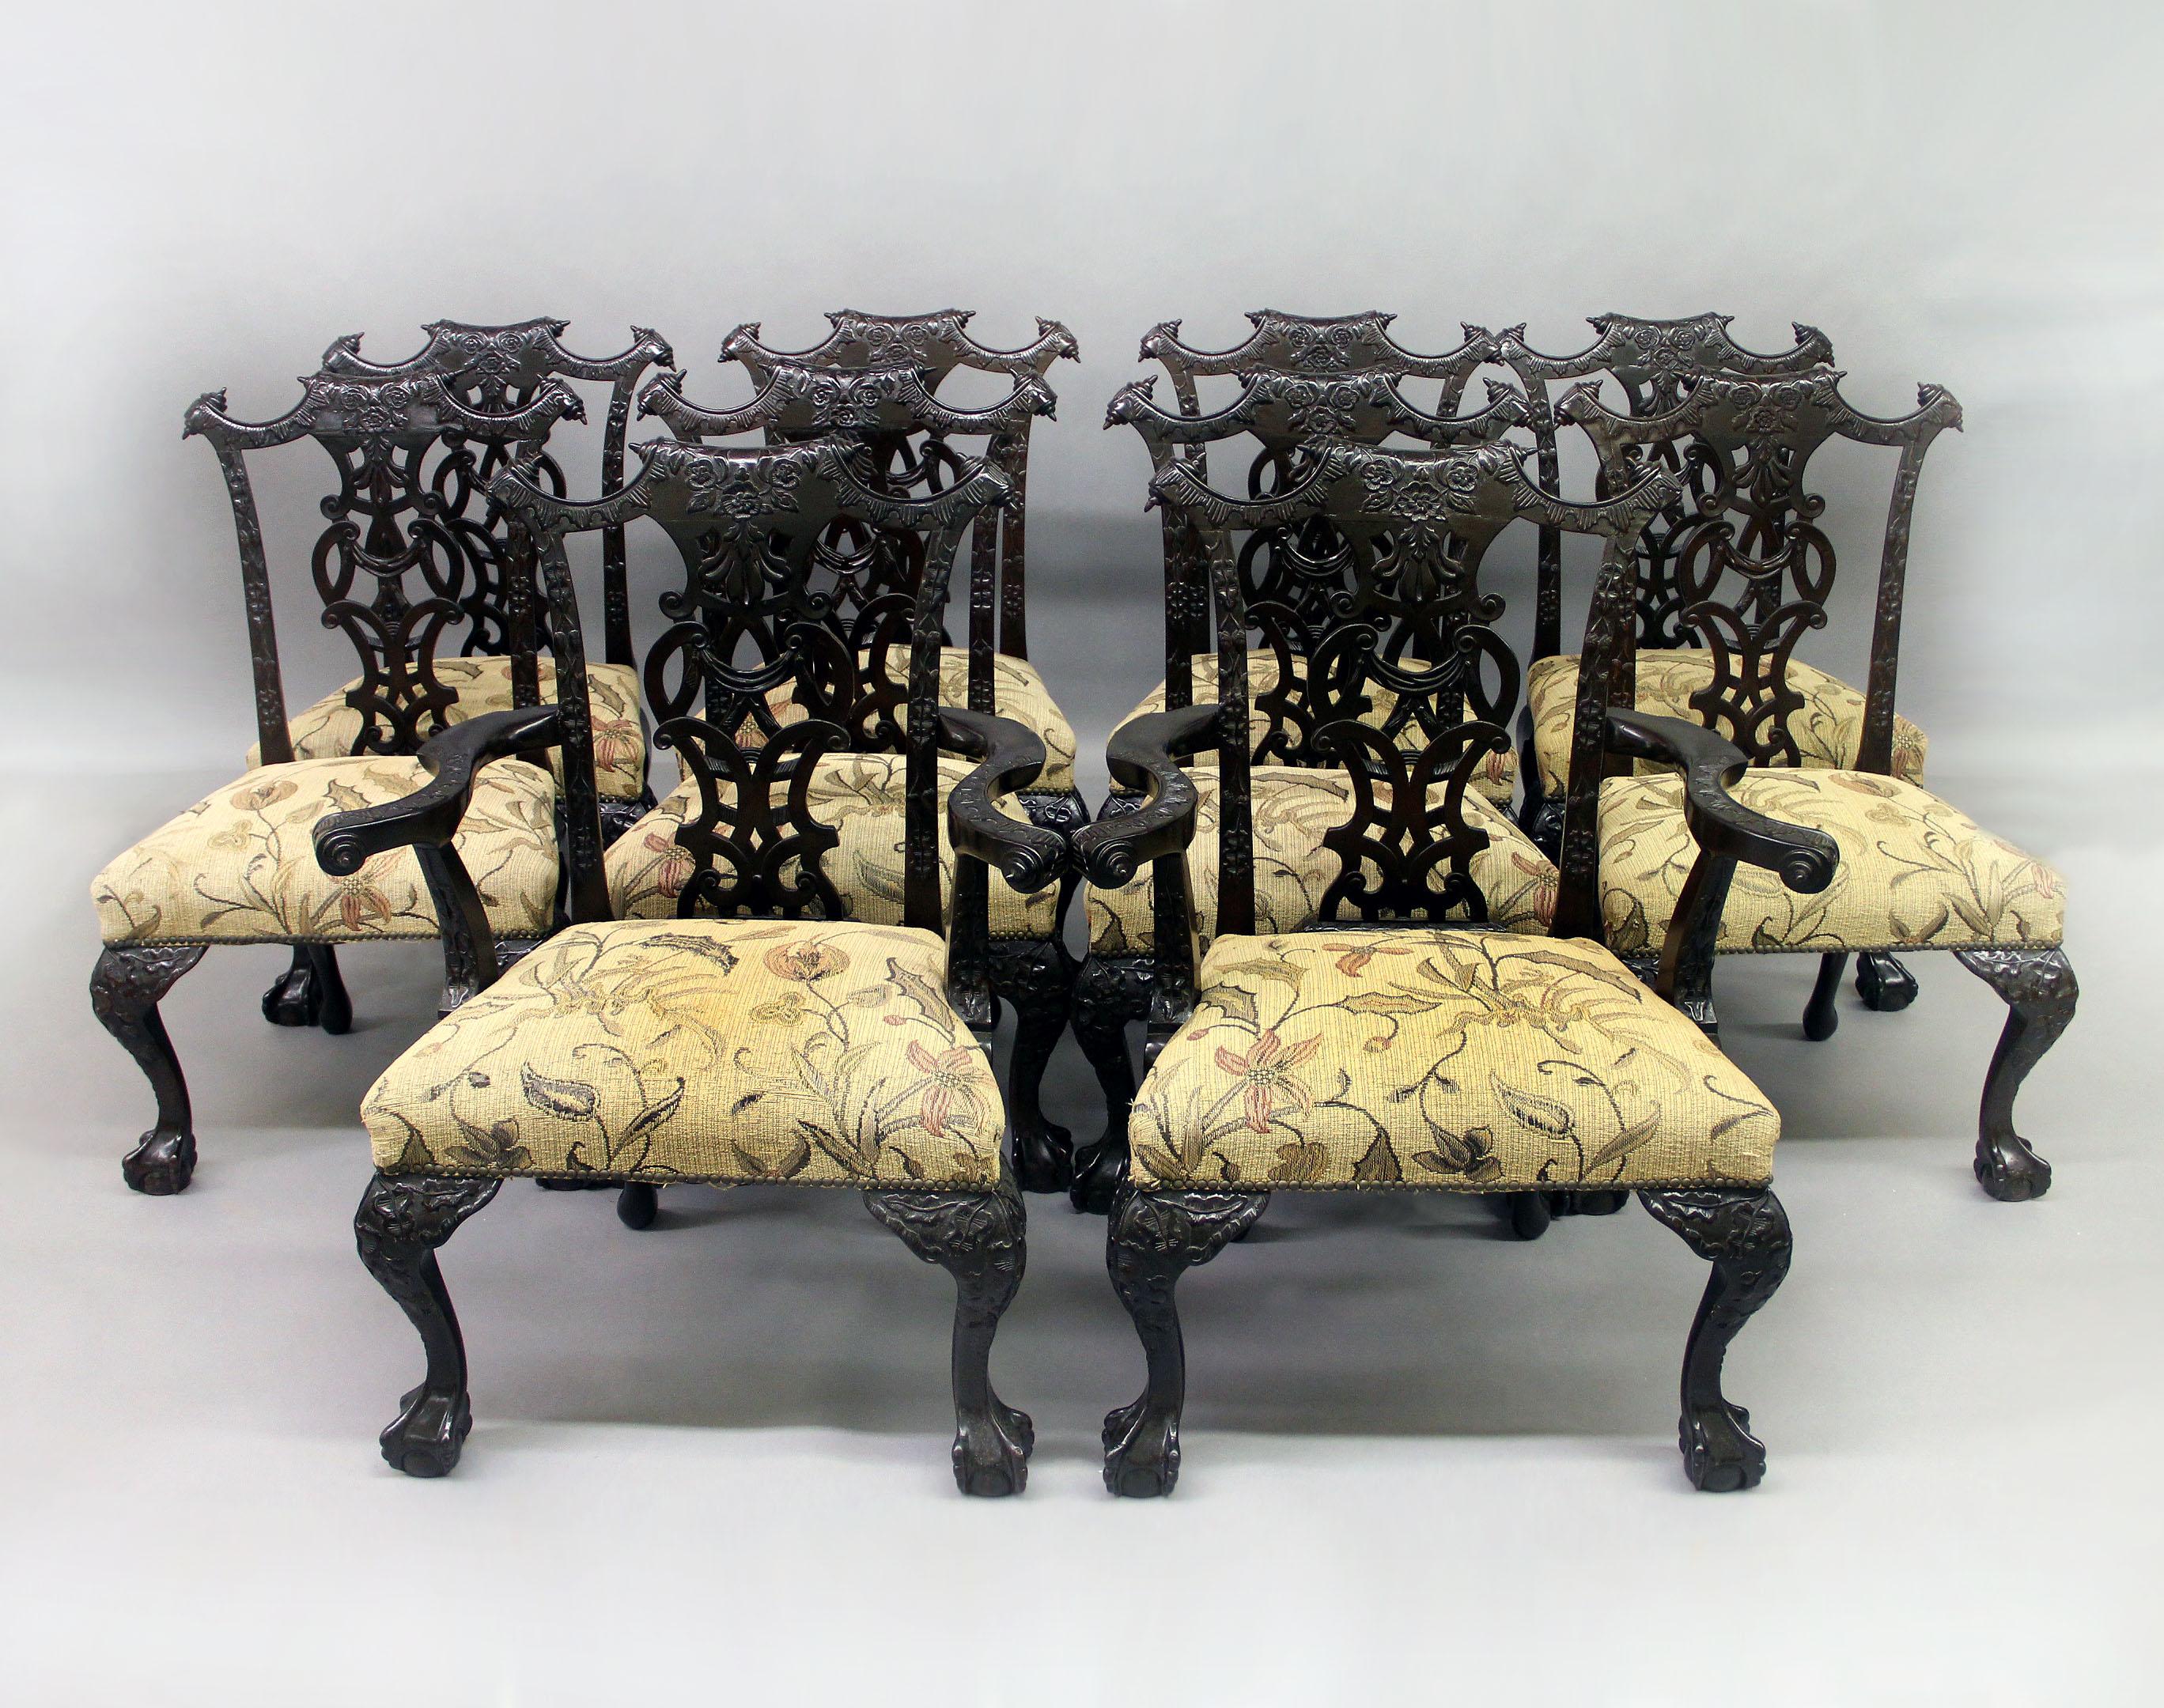 Ein feiner Satz von zehn Esszimmerstühlen im Chippendale-Stil des späten 19.

Bestehend aus zwei Armlehnstühlen und acht Beistellstühlen.

Die ineinander verschlungenen Rückseiten sind mit Rosen und schönen Blattmustern verziert, die oberen